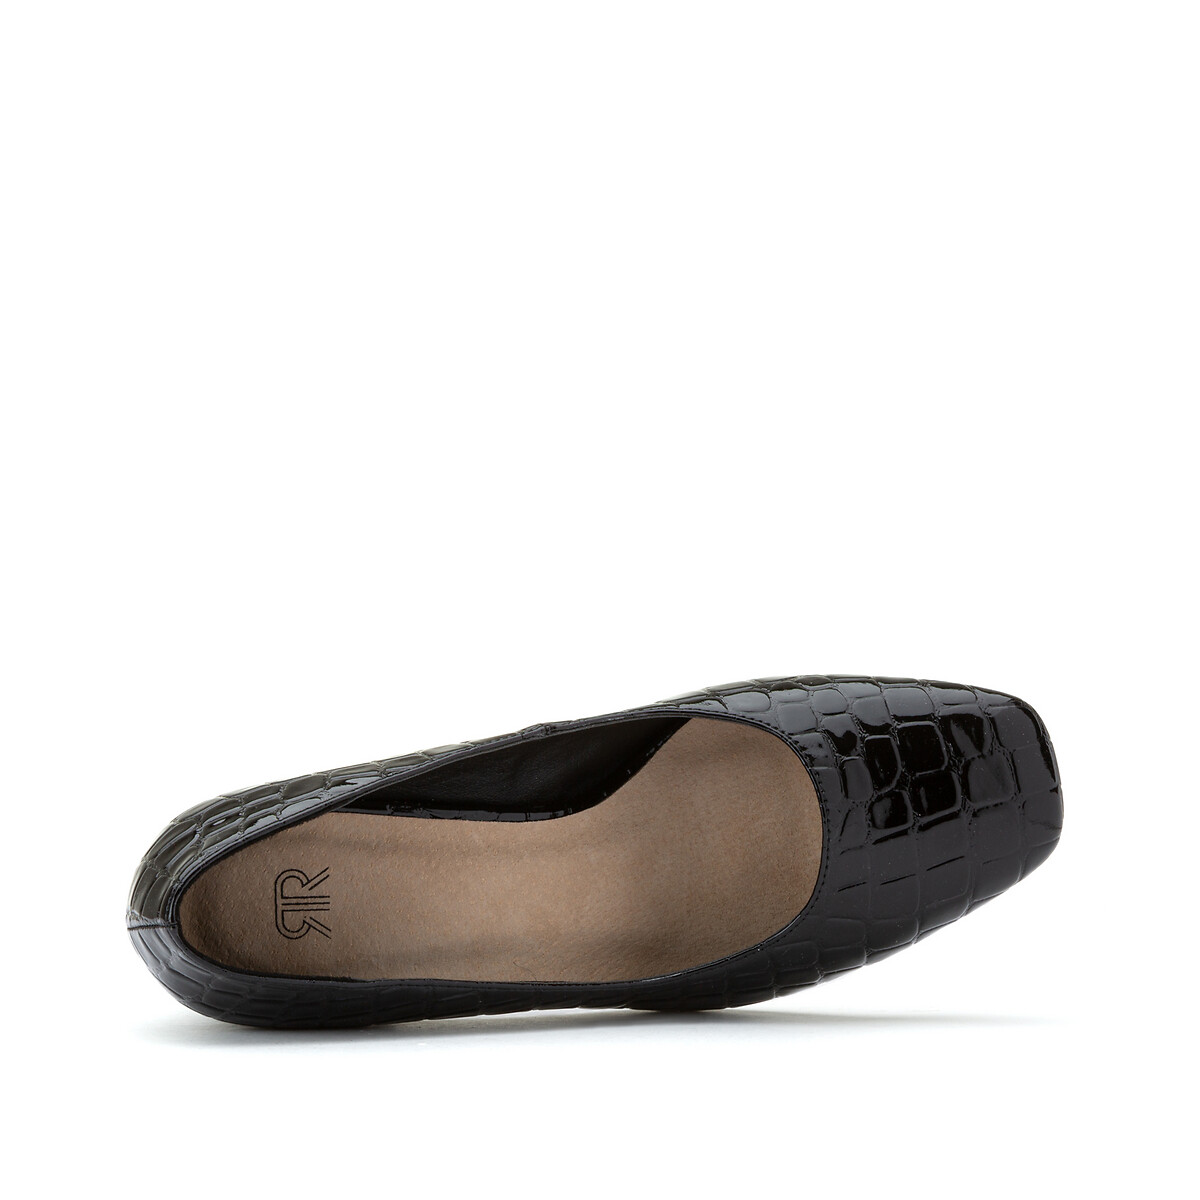 Туфли La Redoute На высоком каблуке с эффектом крокодиловой кожи 39 черный, размер 39 - фото 4